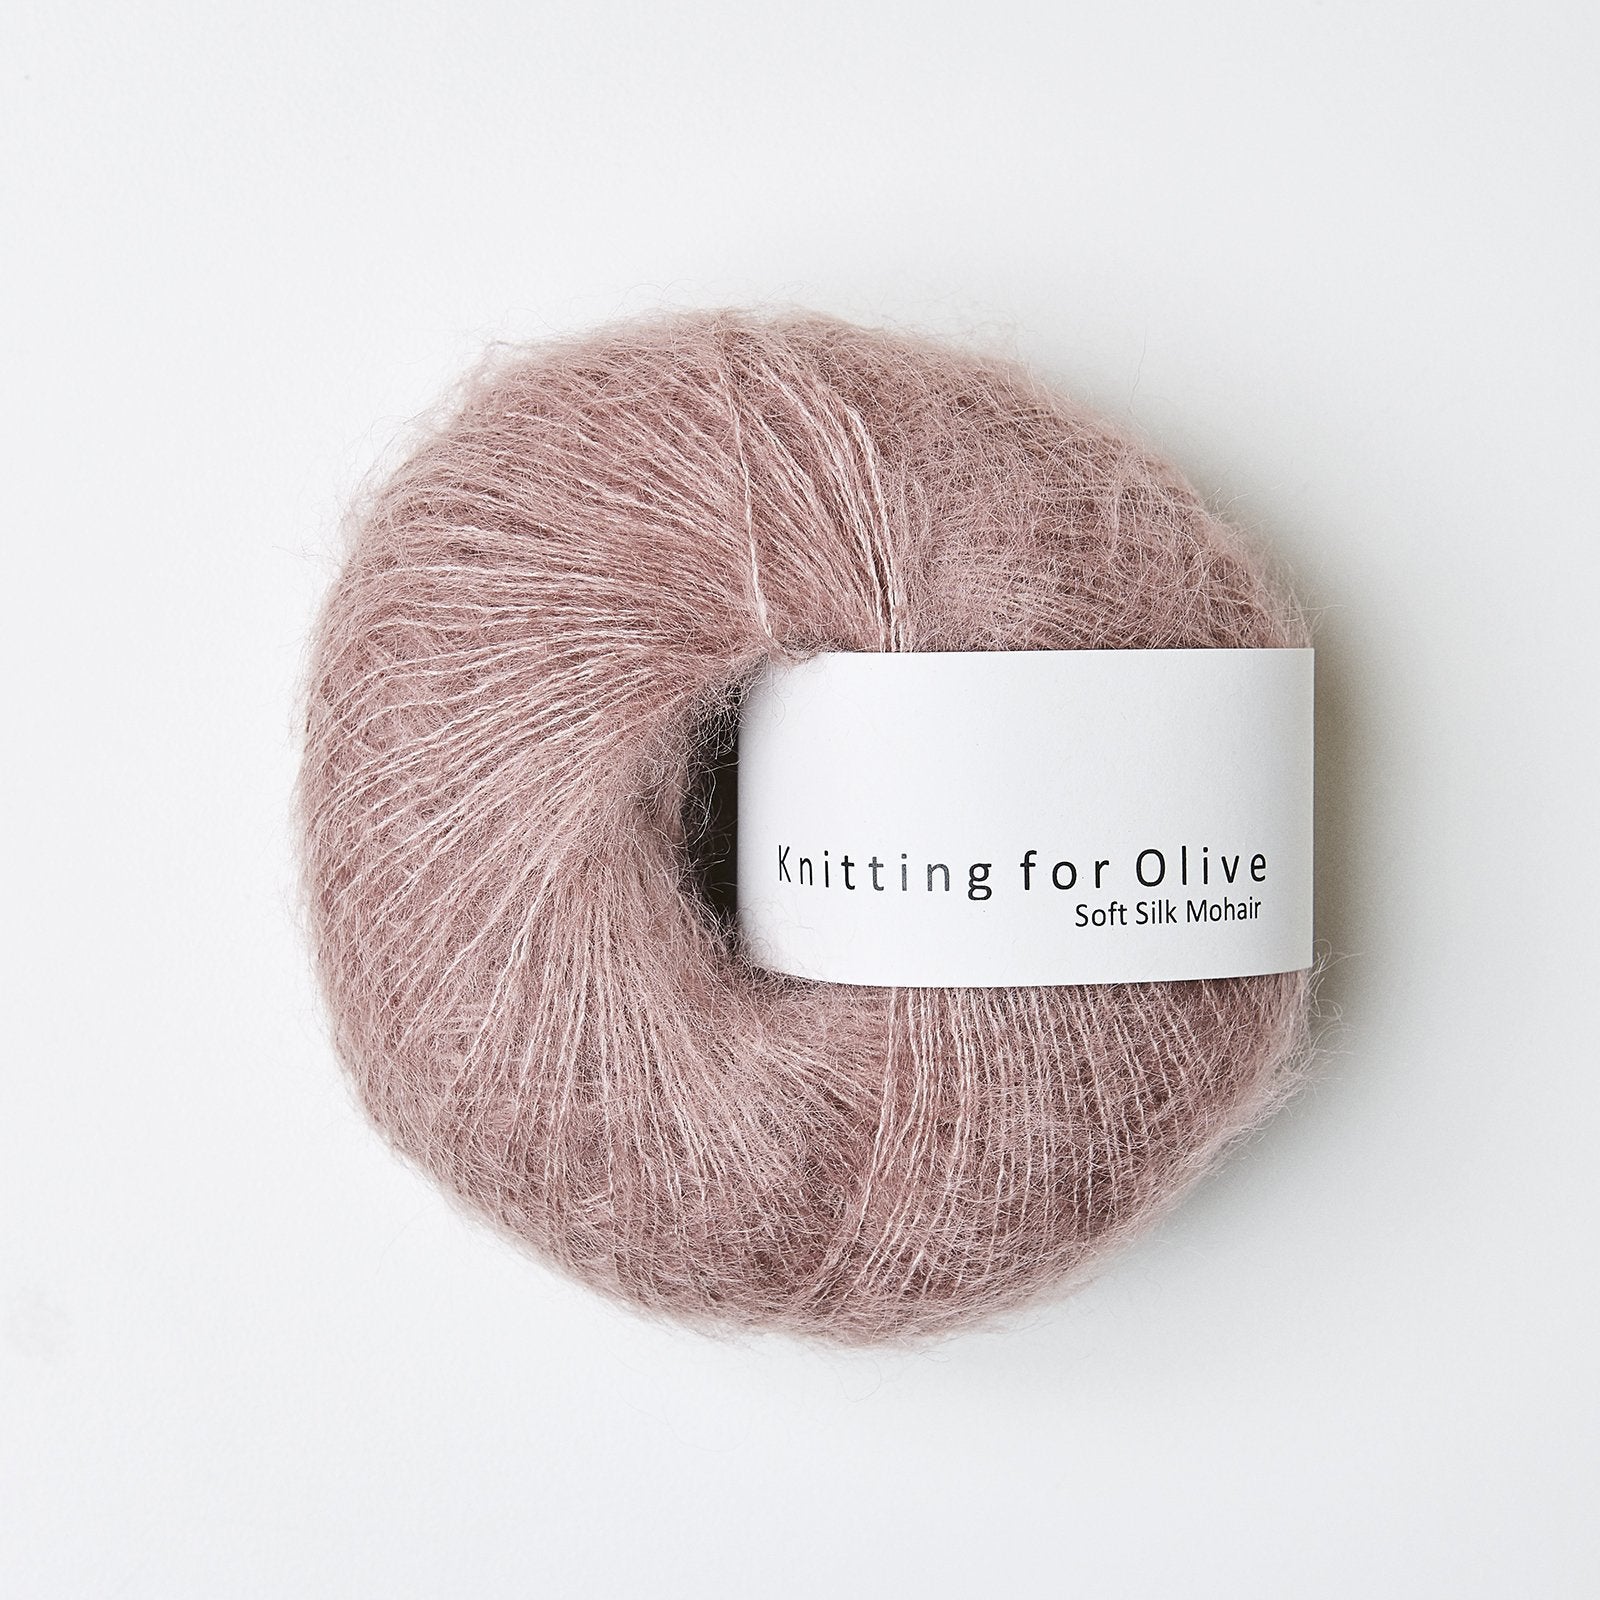 Knitting_for_olive_SoftSilkMohair_gammel